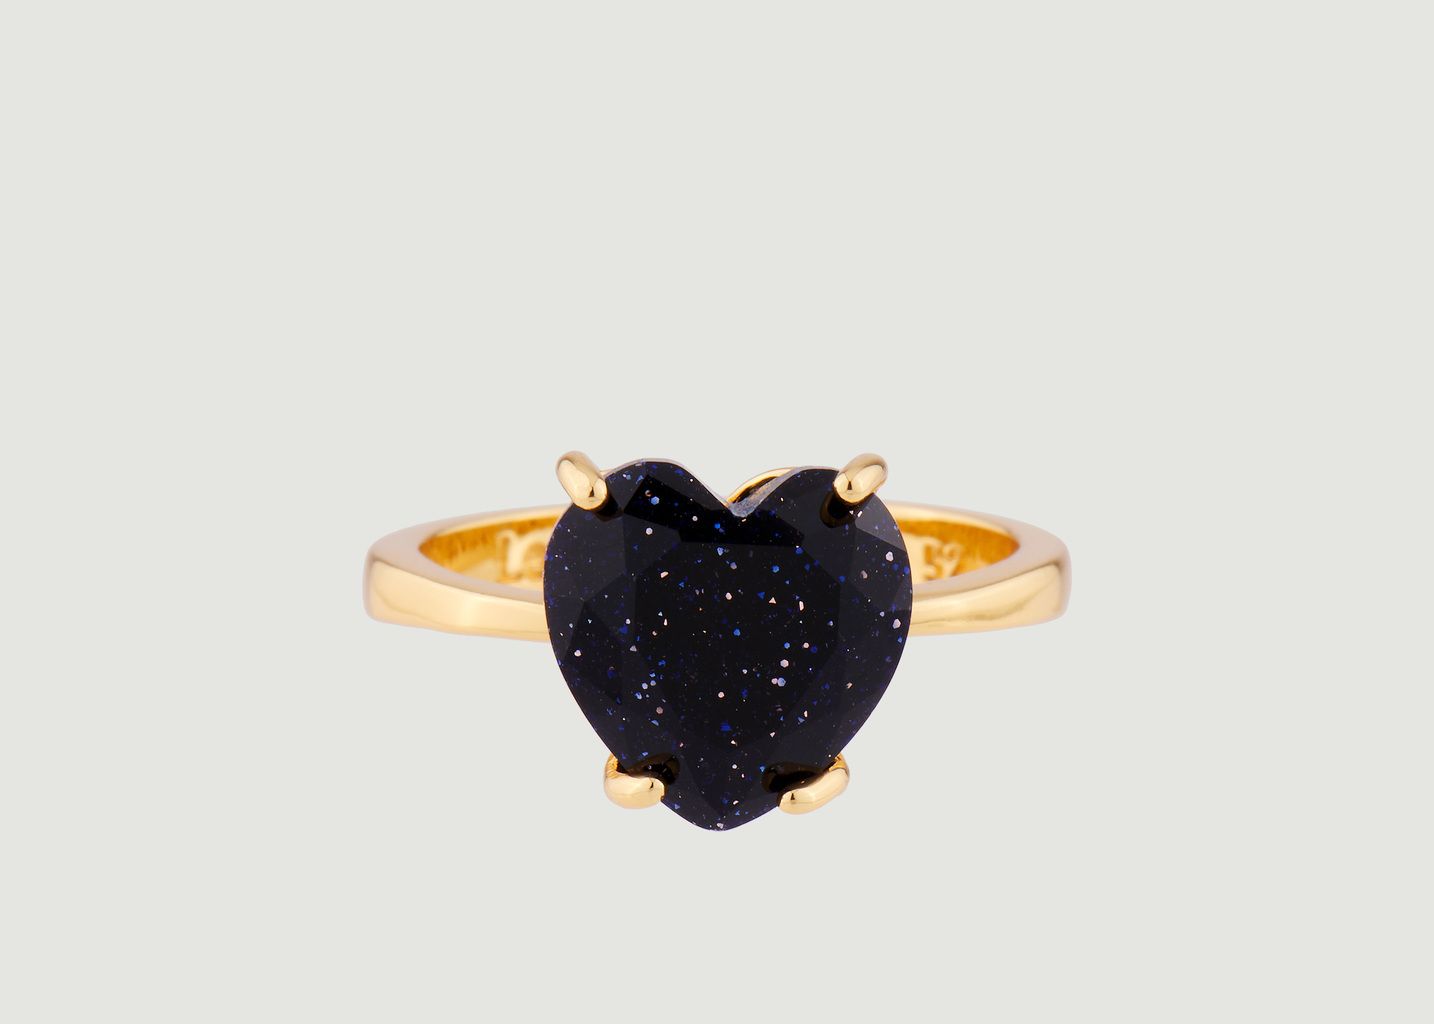 La Diamantine heart stone ring - Les Néréides